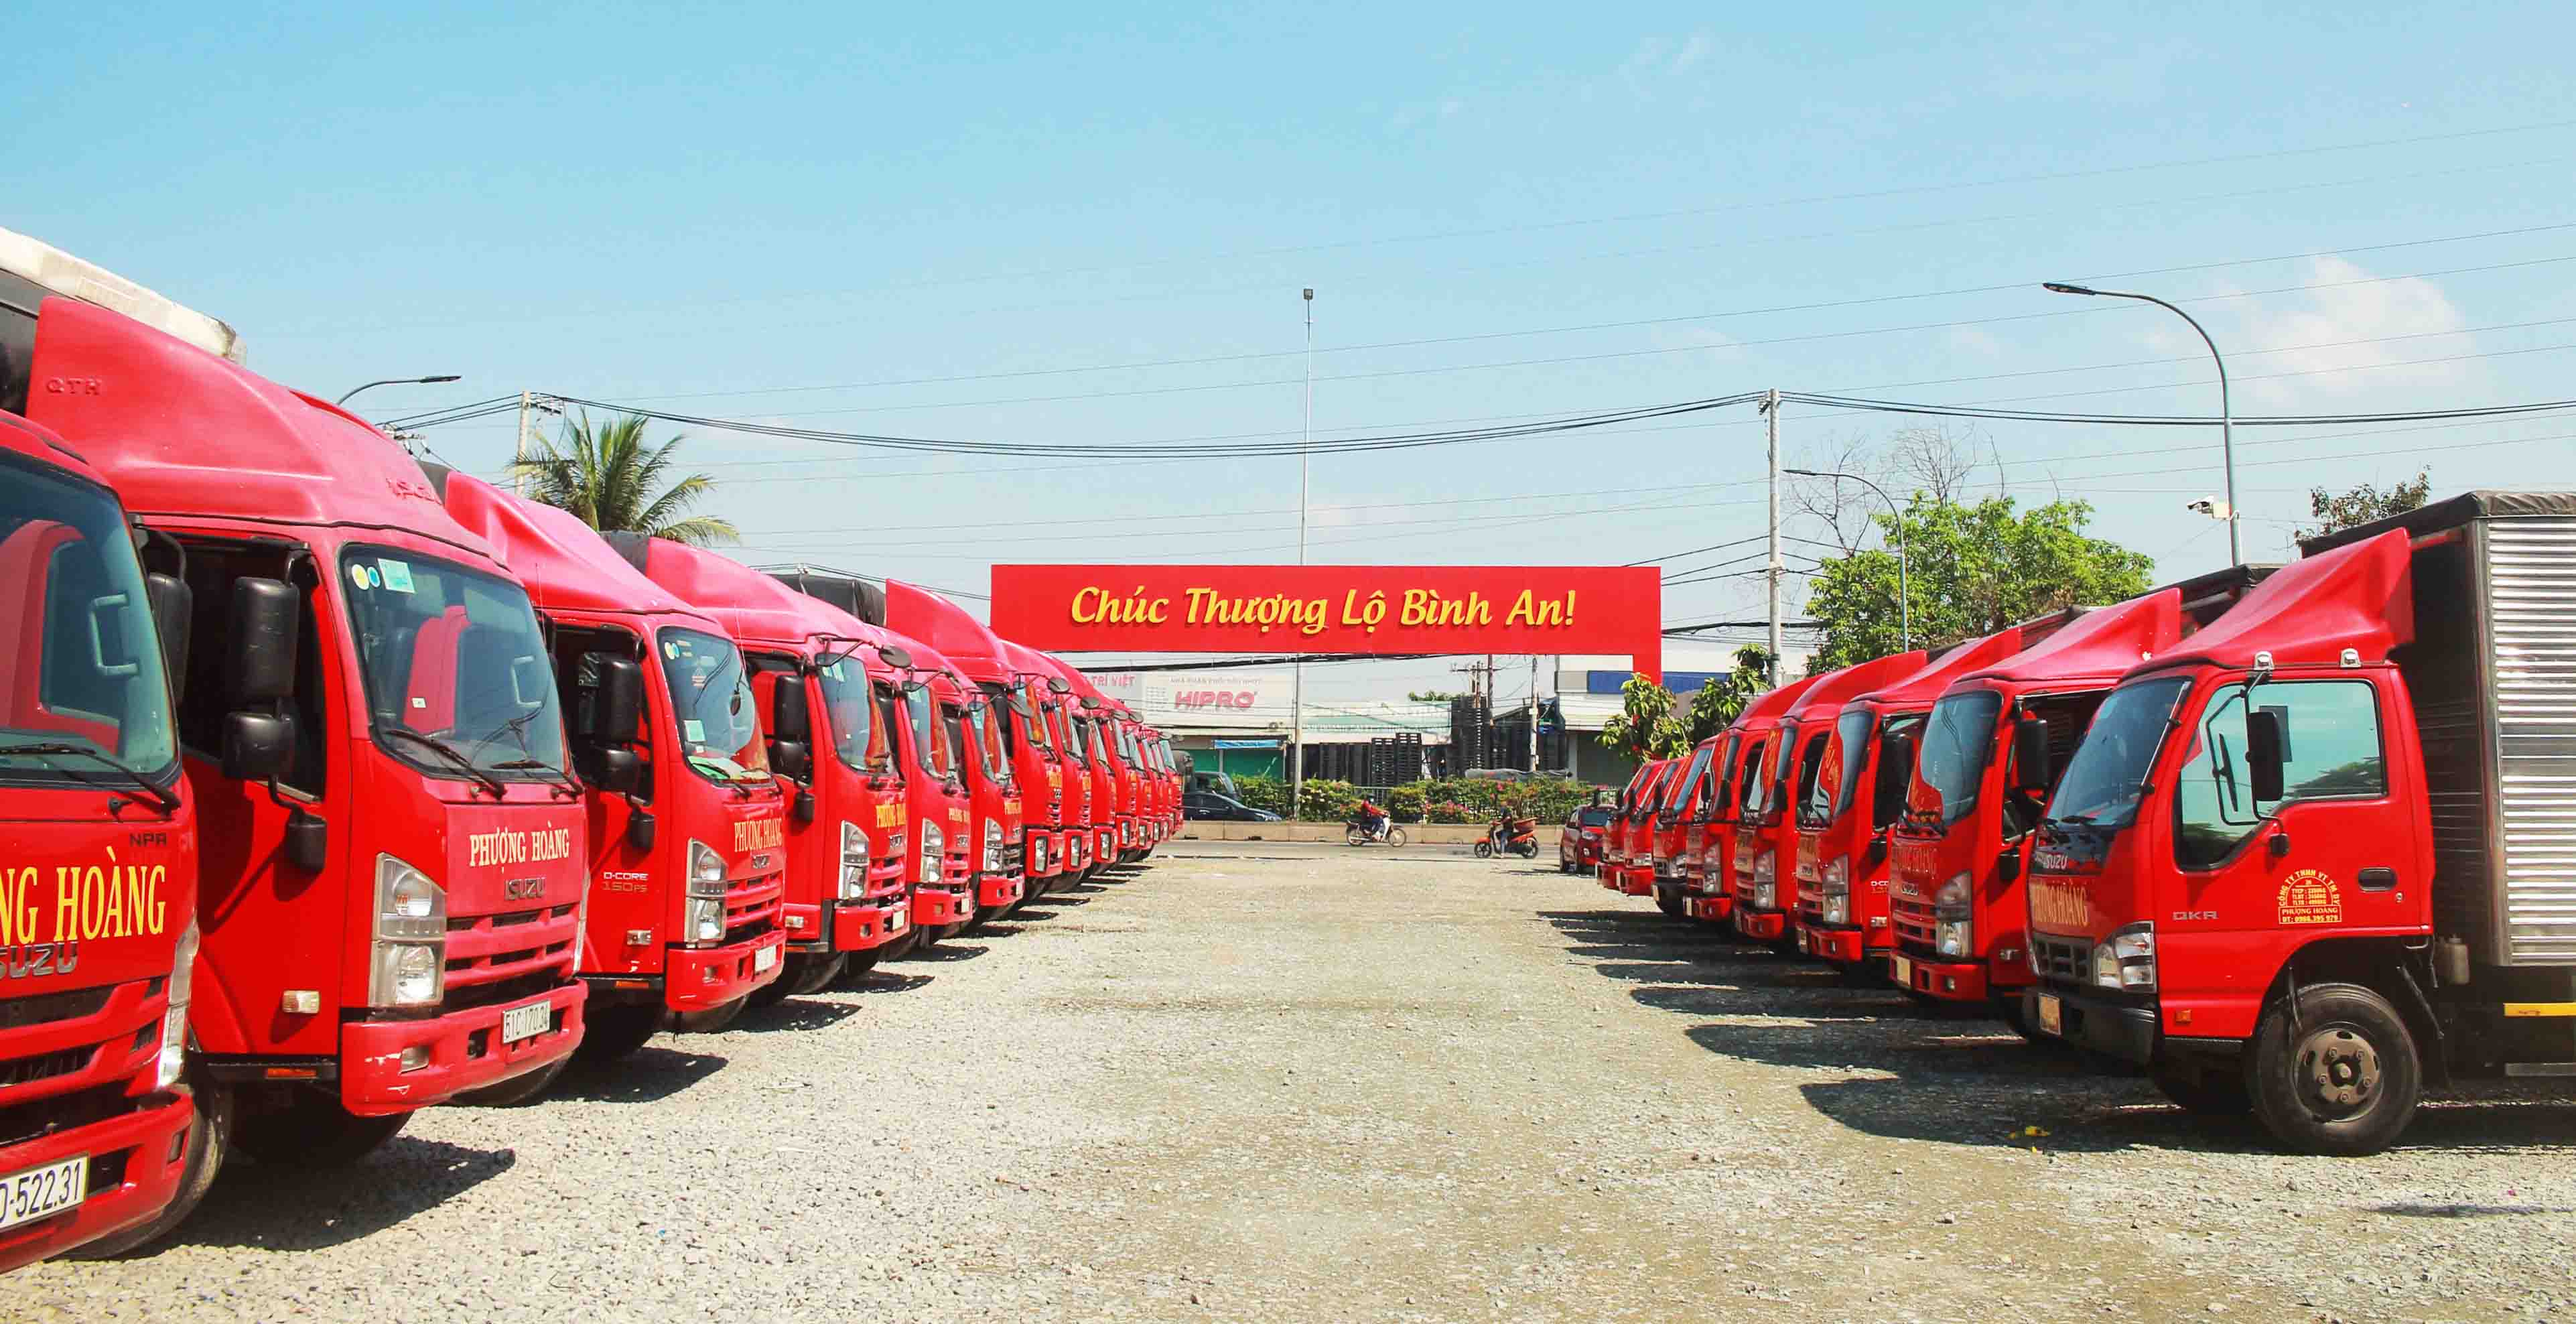 Phát hiện 15 người trong thùng xe đông lạnh để thông chốt ở Bình Thuận